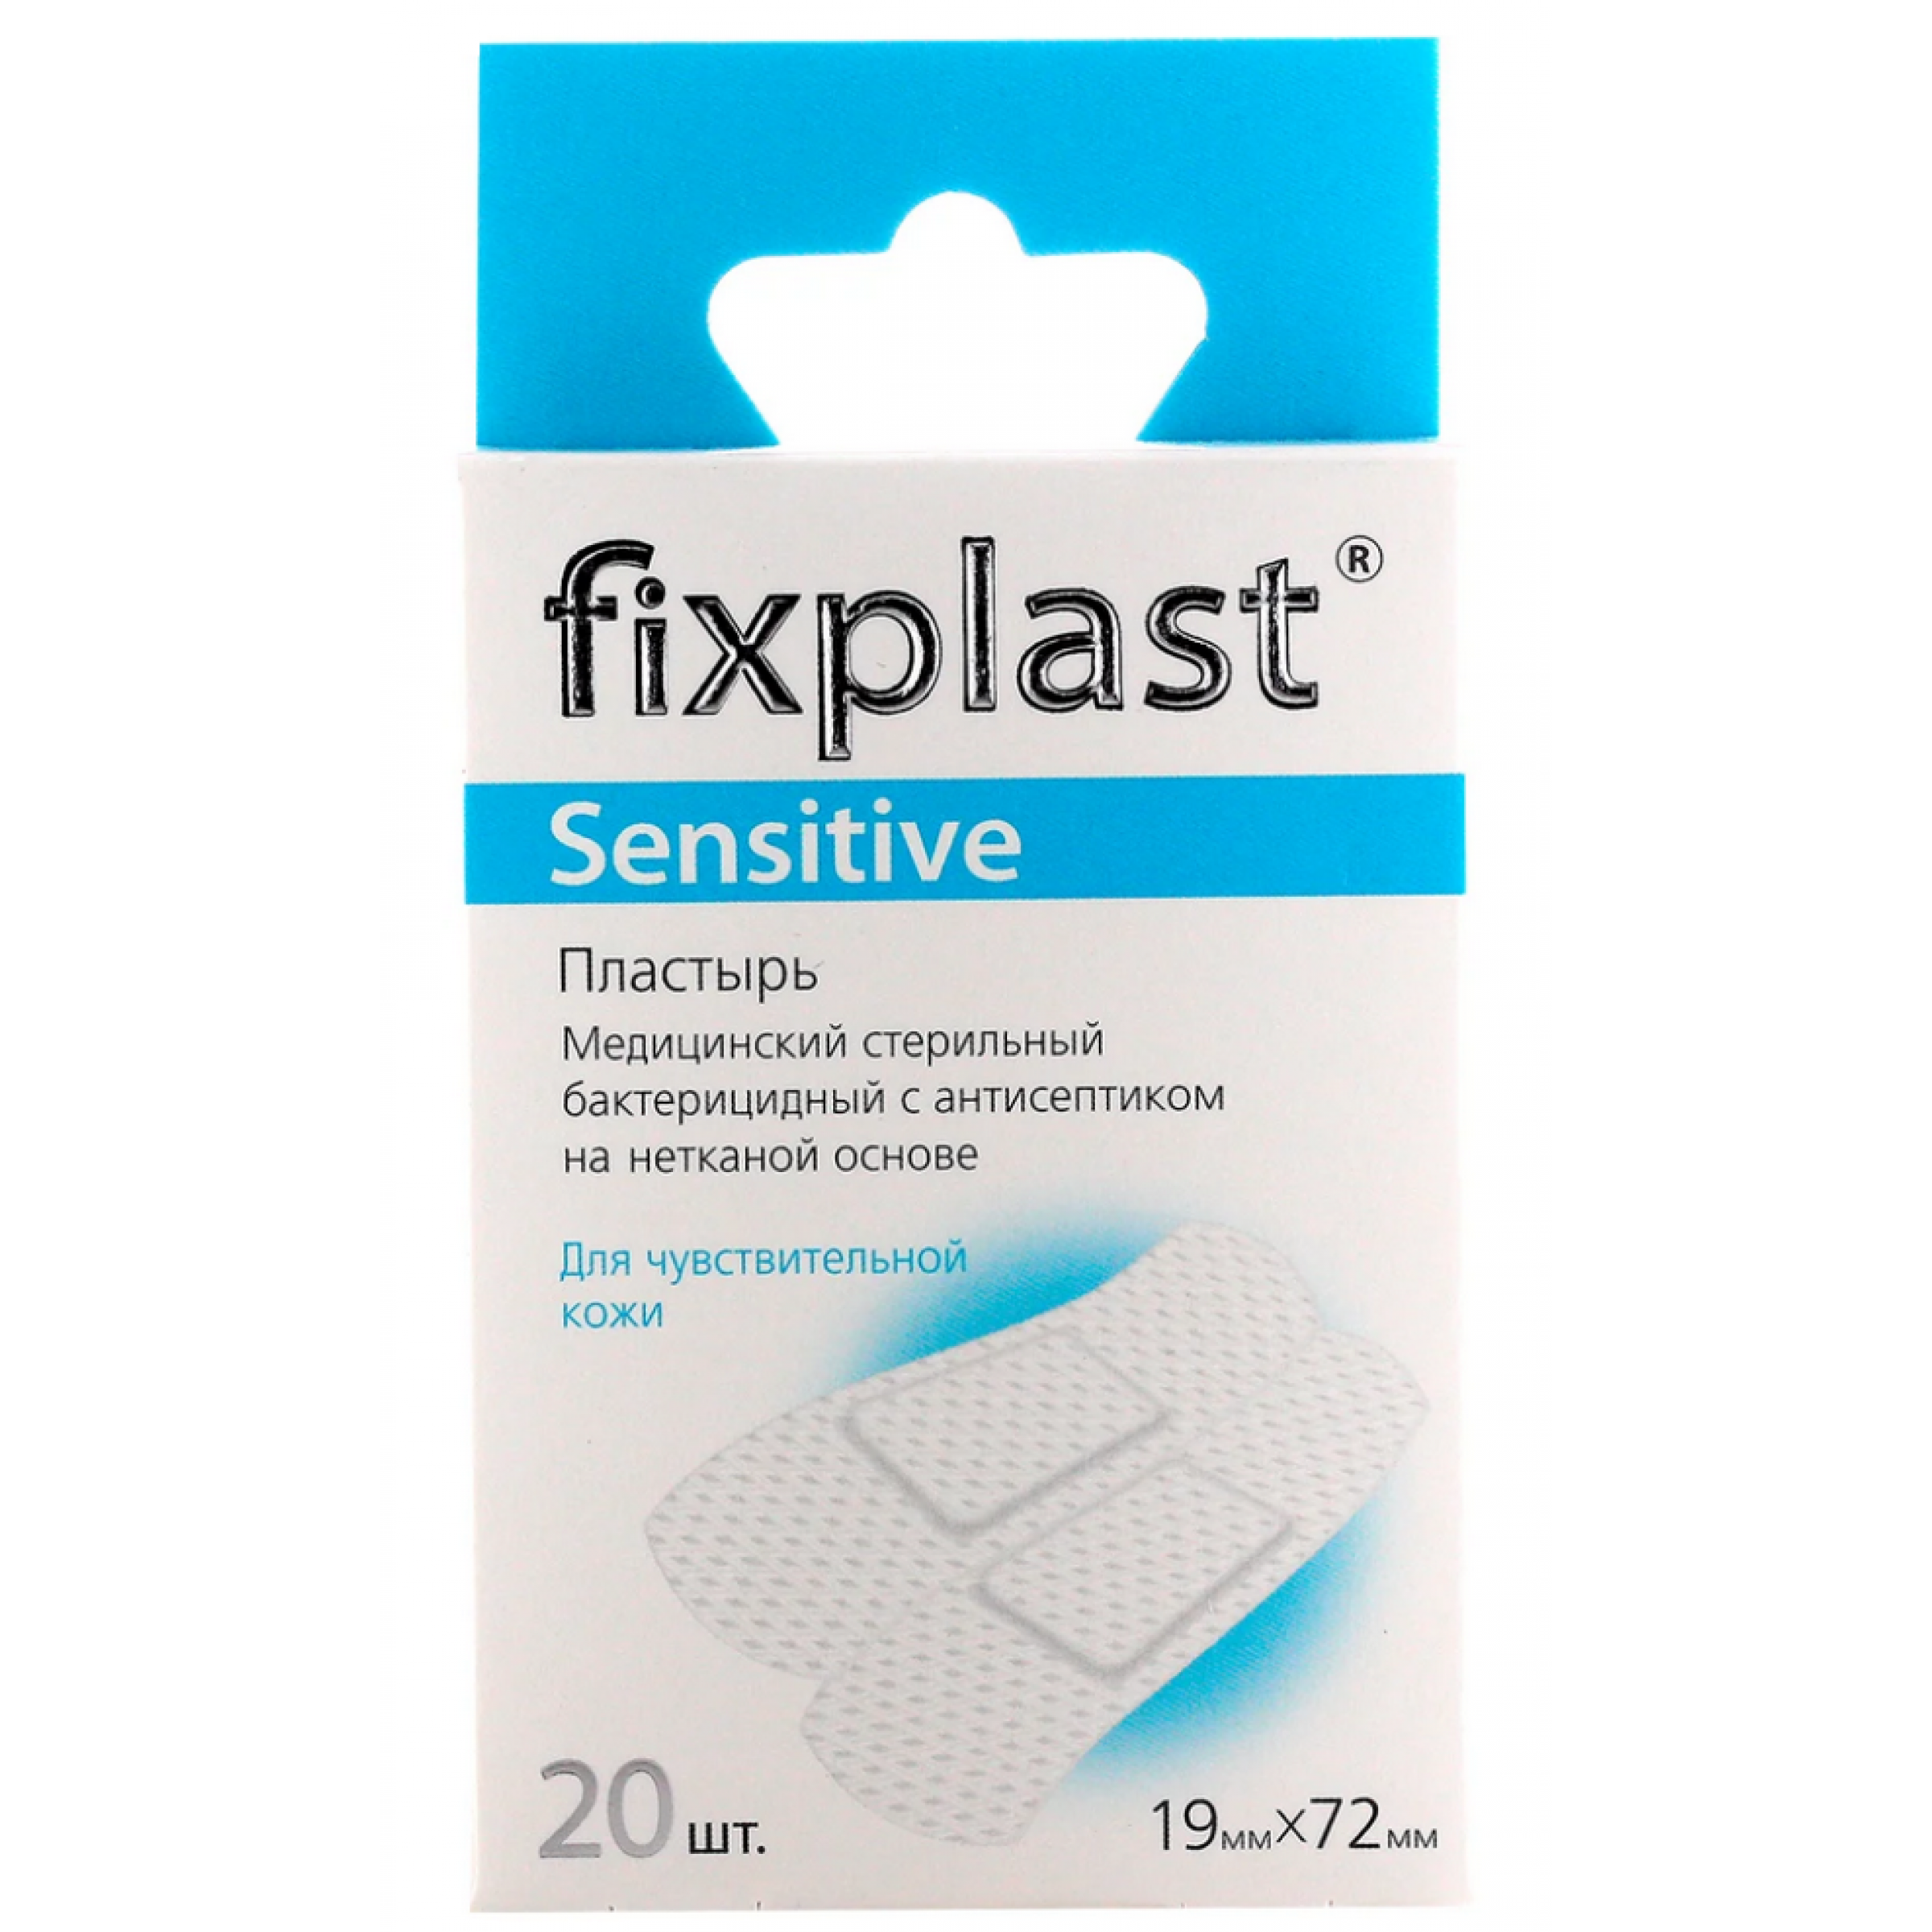 Пластырь стерильный бактерицидный Fixplast Sensitive на нетканой основе для чувствительной кожи 1,9хх7,2 мм 20 шт